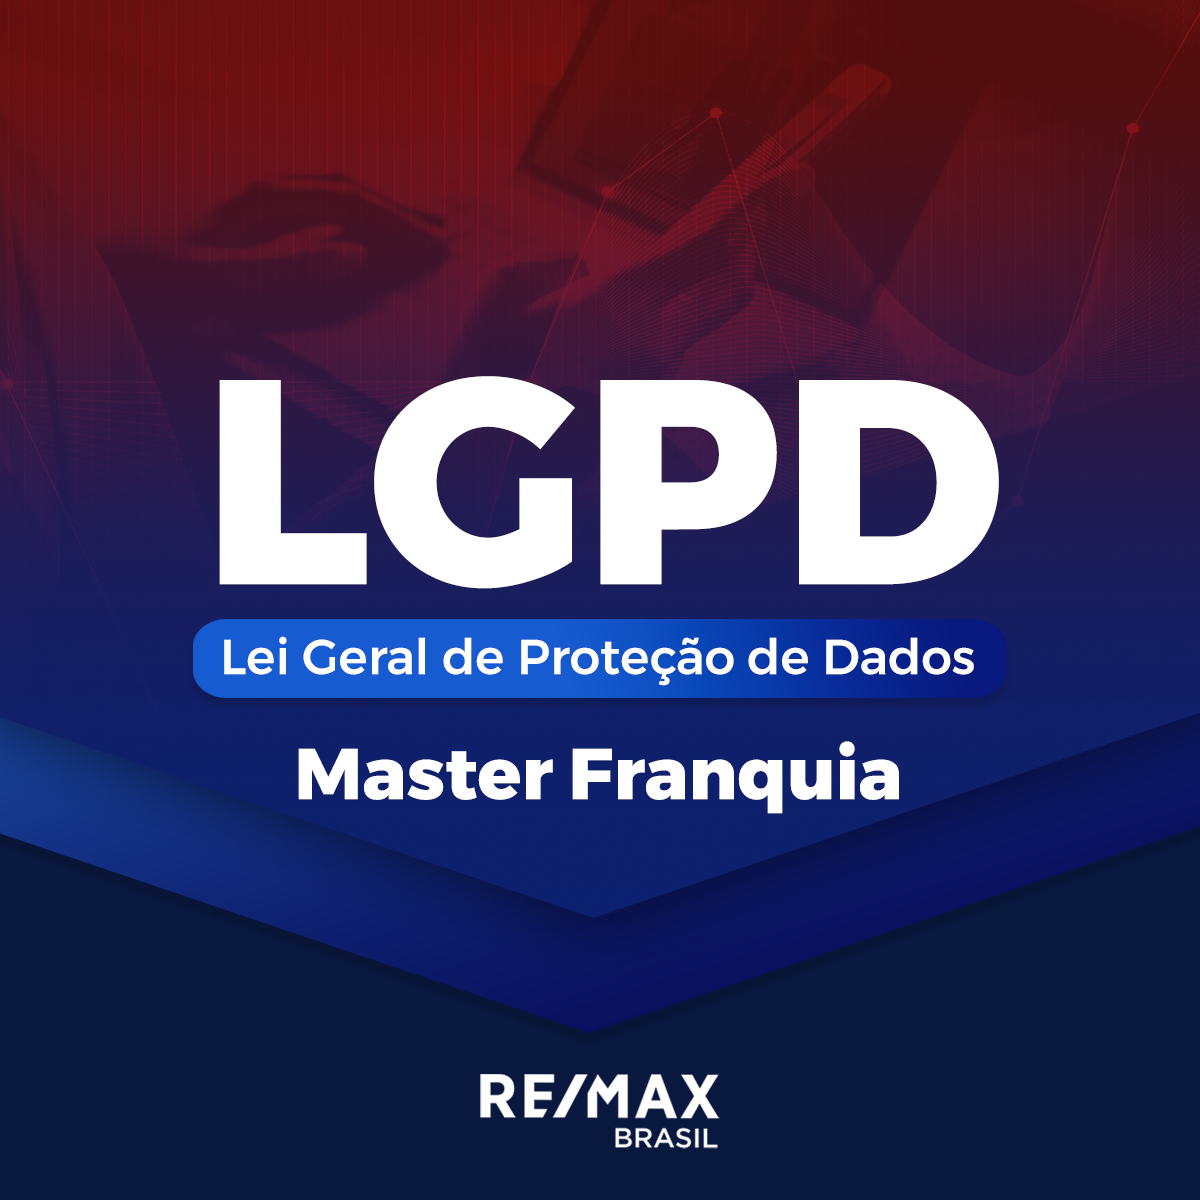 LGPD - LEI GERAL DE PROTEÇÃO DE DADOS -  MFR